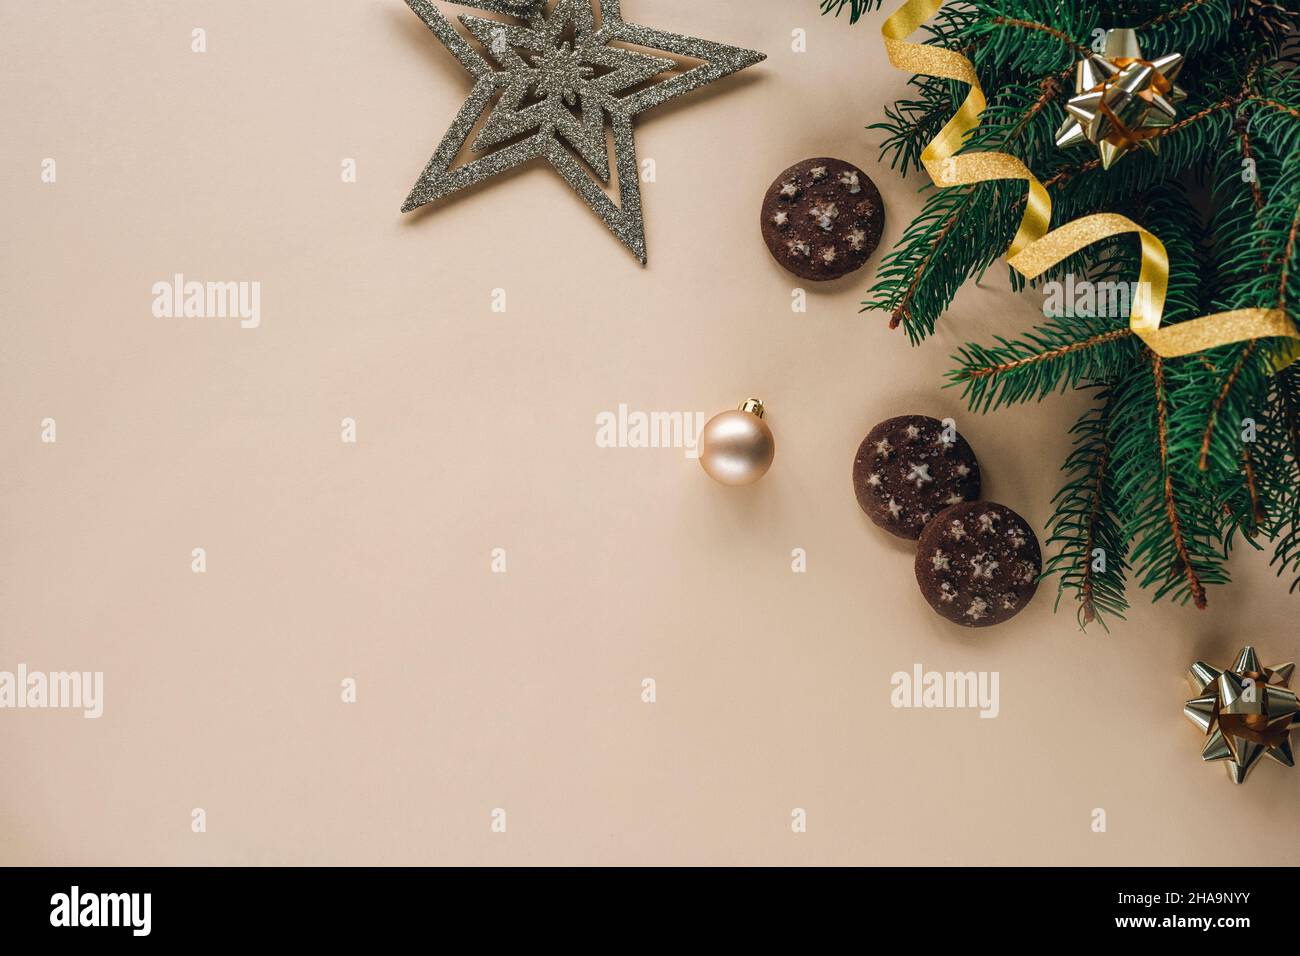 Composizione natalizia su sfondo chiaro con rami di abete, giocattoli, biscotti stellari e al cioccolato. Vista dall'alto, disposizione piatta, spazio di copia. Foto Stock